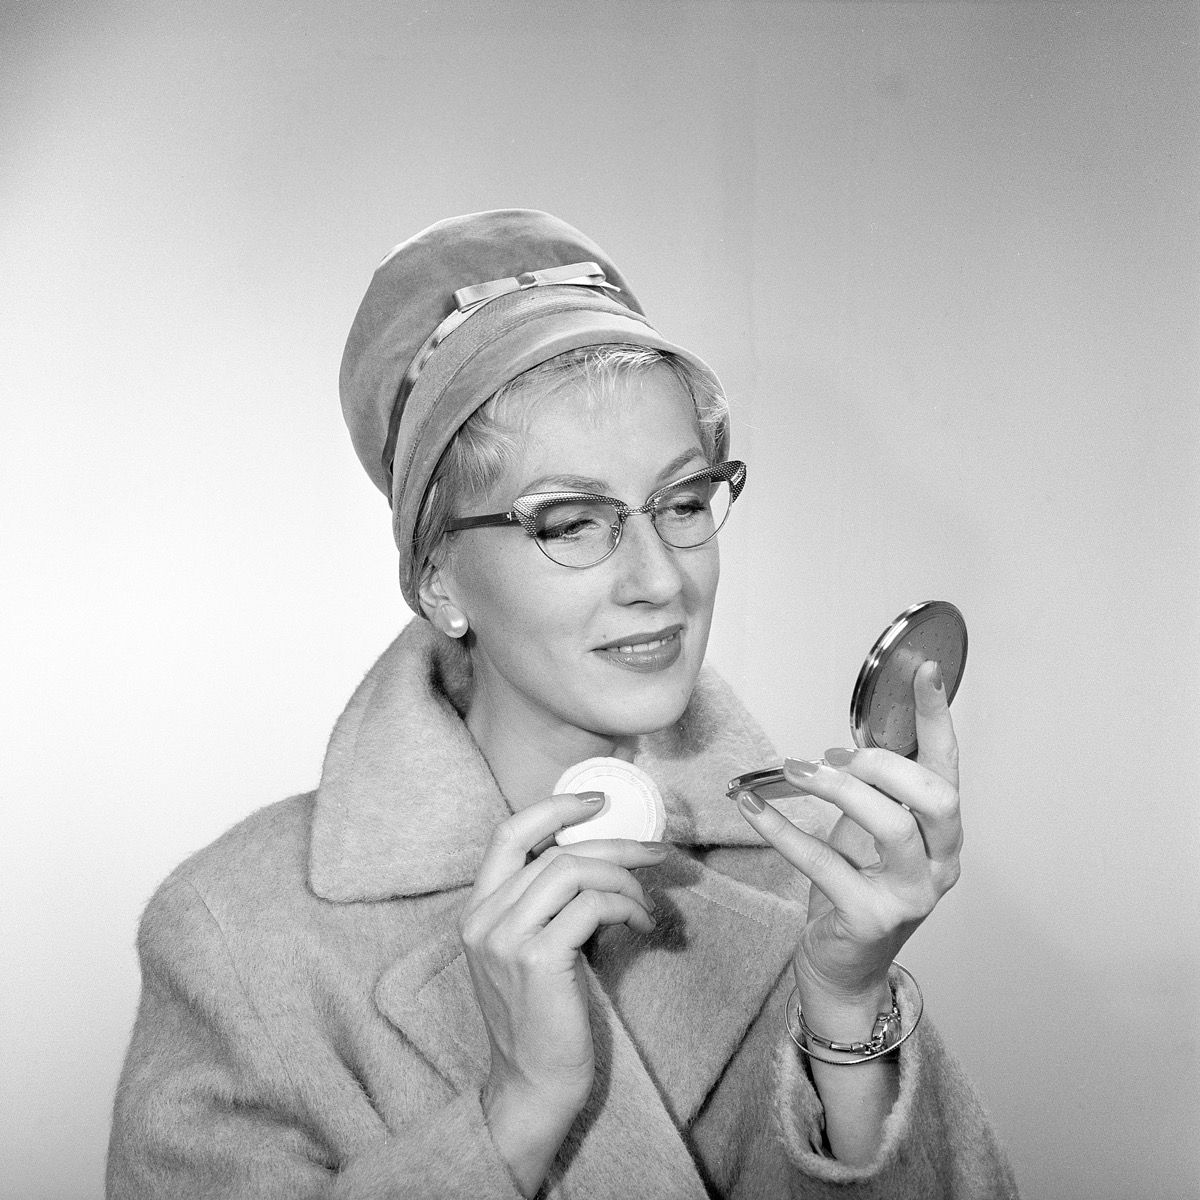 Smink på 1950-talet. En ung kvinna tittar på sig själv i fickspegeln och förbättrar sin smink. Hon har en trendig hatt, typiska 50-tal glasögon och en kappa. 1950-talet